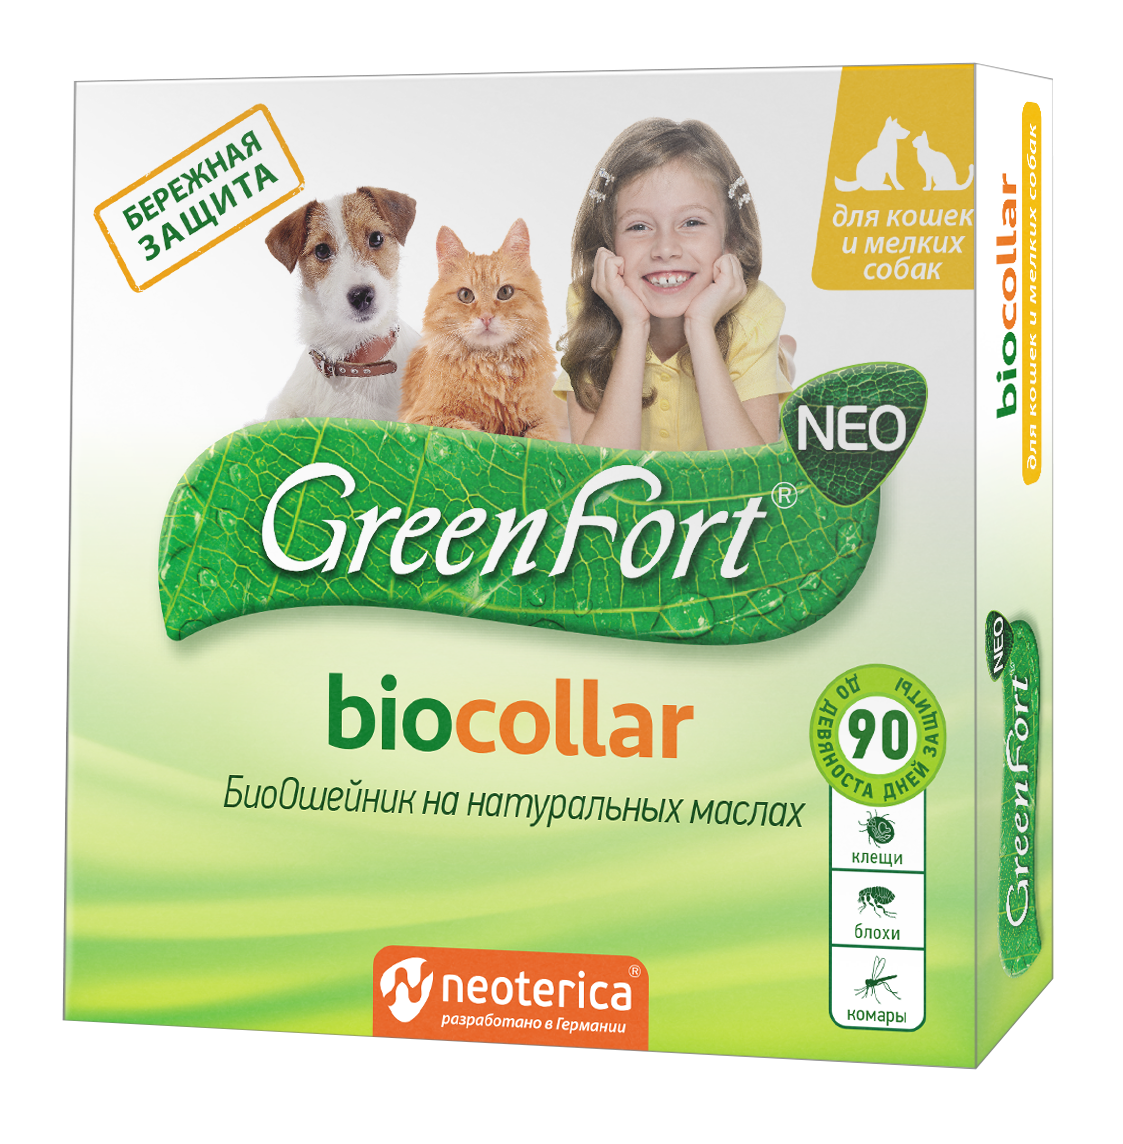 Green Fort (Грин Форт) Biocollar - БиоОшейник на натуральных маслах для Кошек и мелких Собак